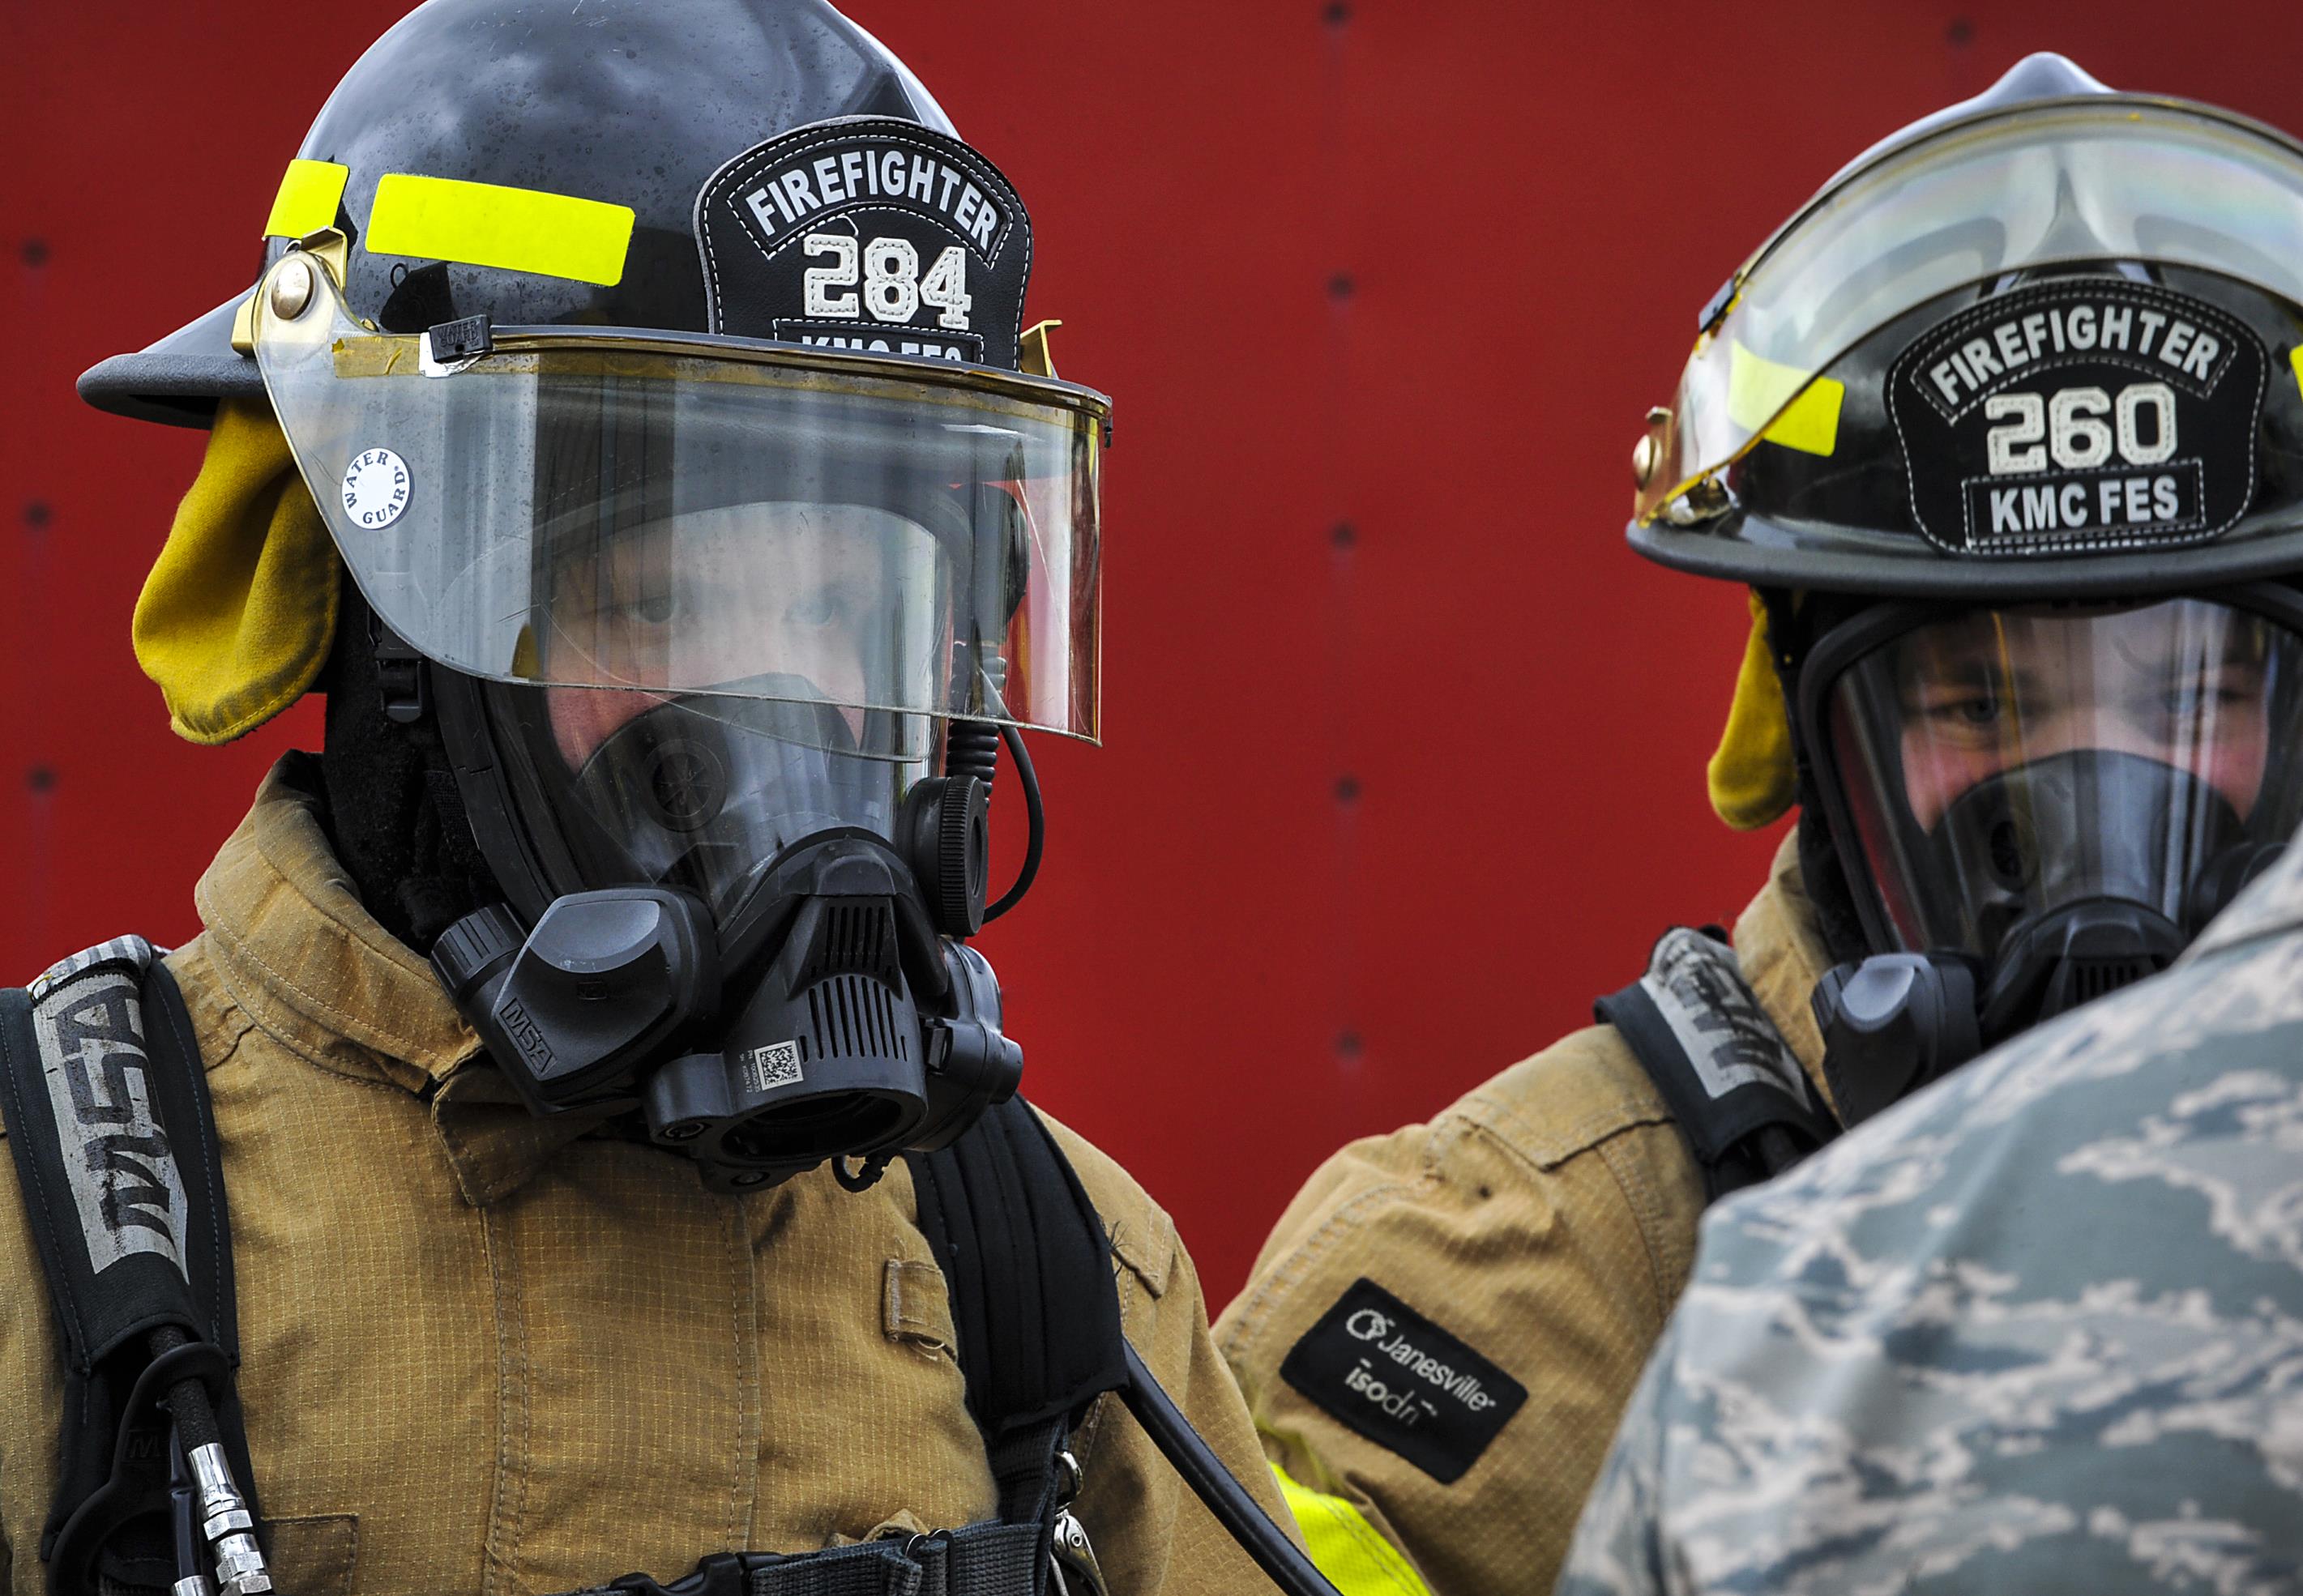 DVIDS - News - 23rd OD Firefighters train alongside Ramstein Firefighters